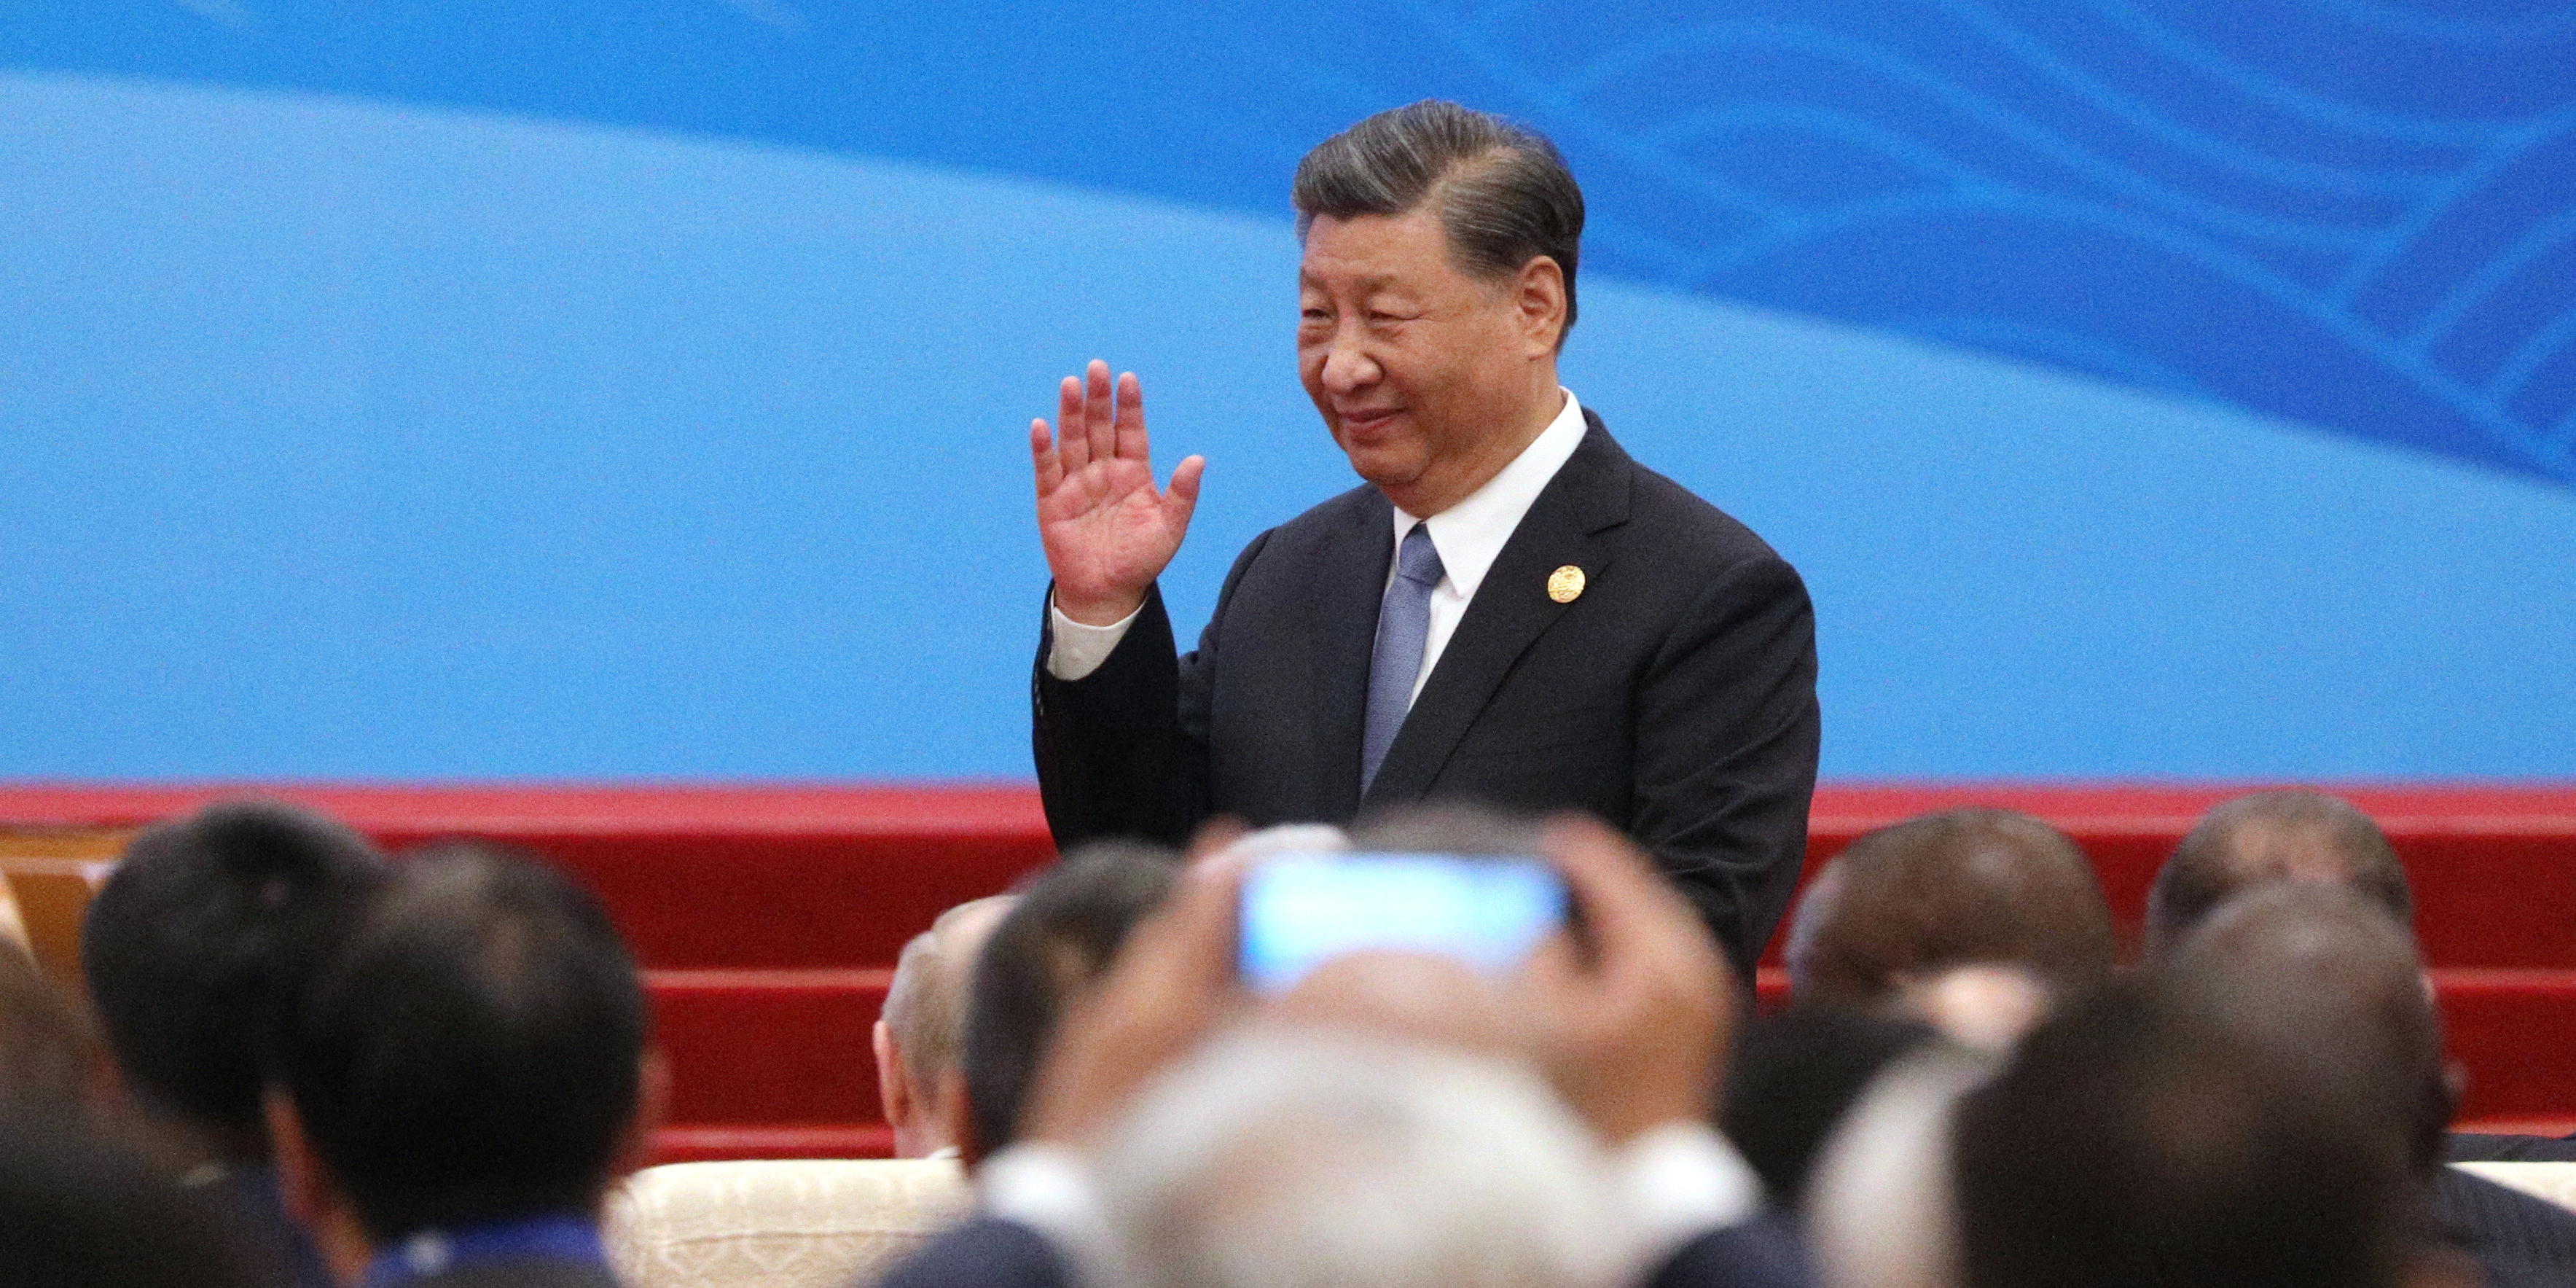 Le président Xi Jinping présent à un sommet pour gérer les risques financiers de la Chine